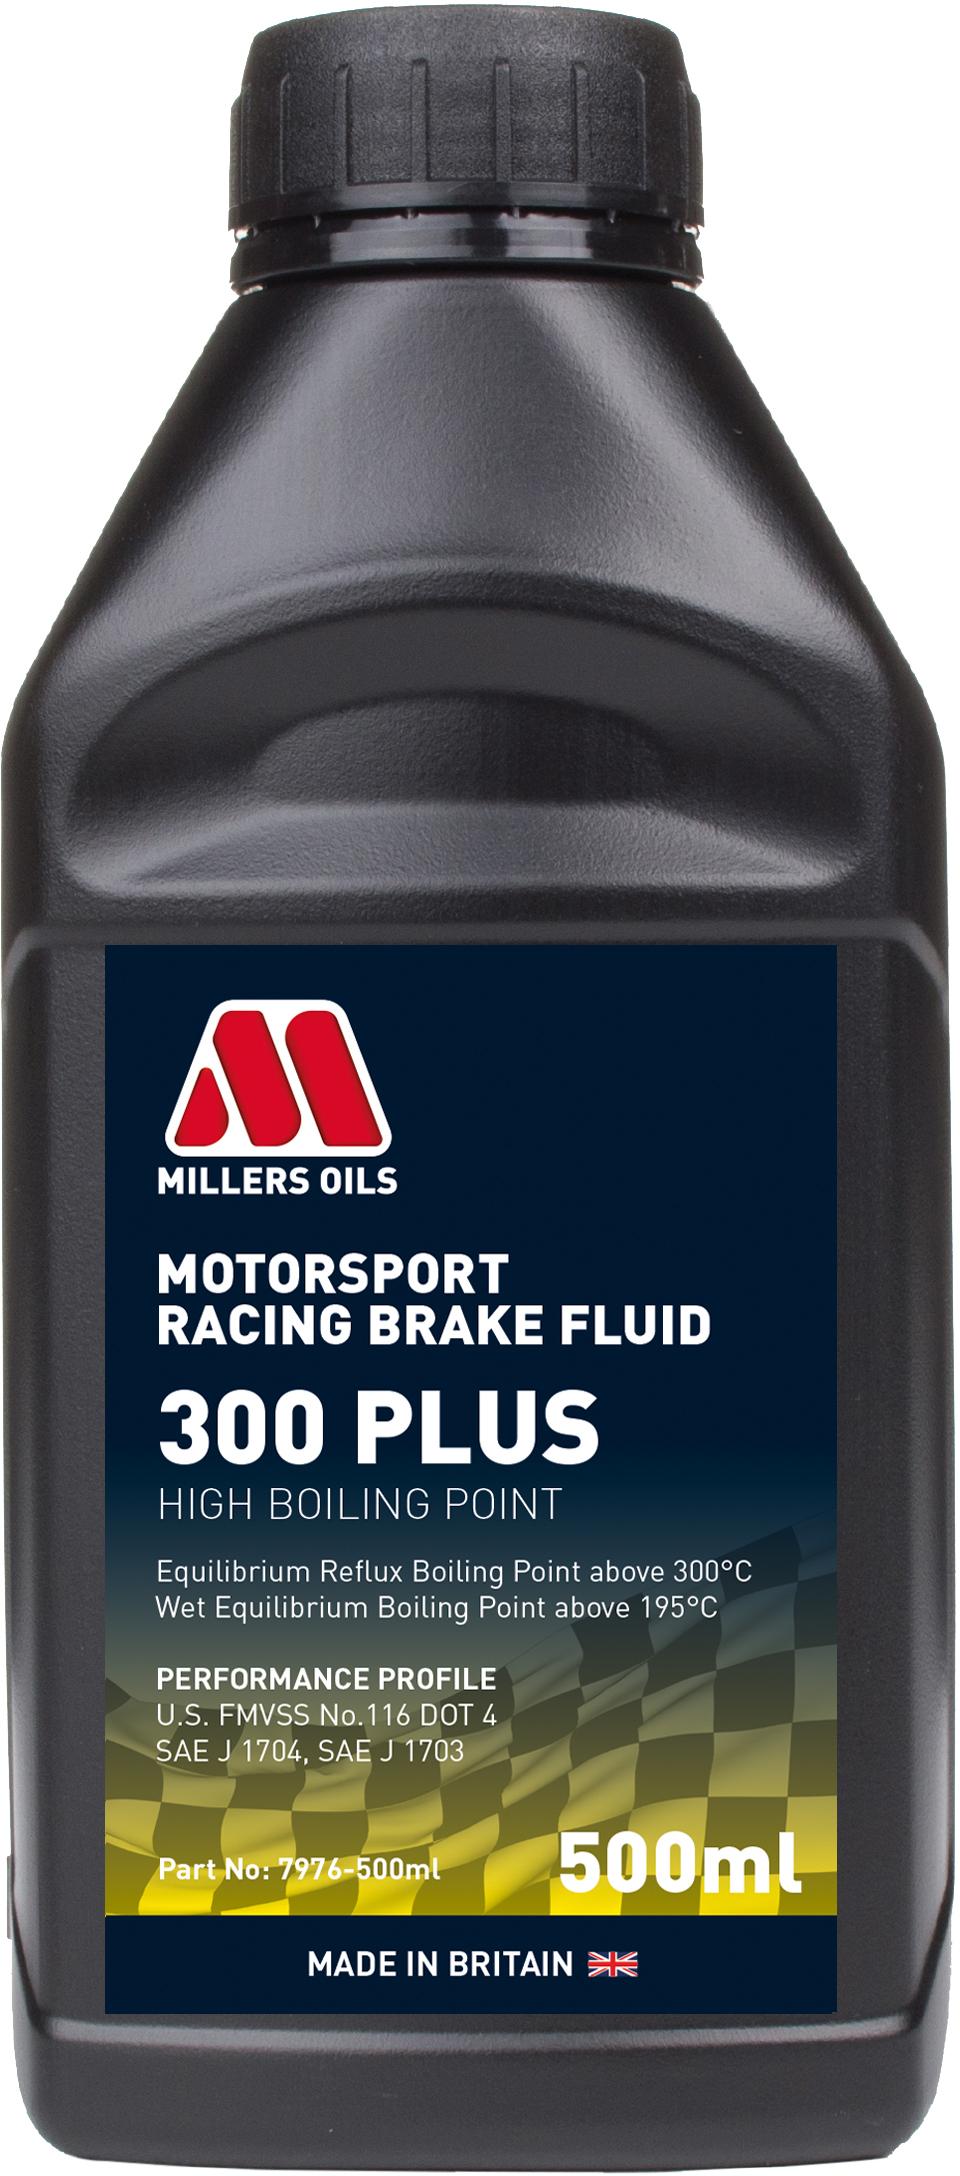 Millers Oils Racing Brake Fluid 300 Plus - 500Ml